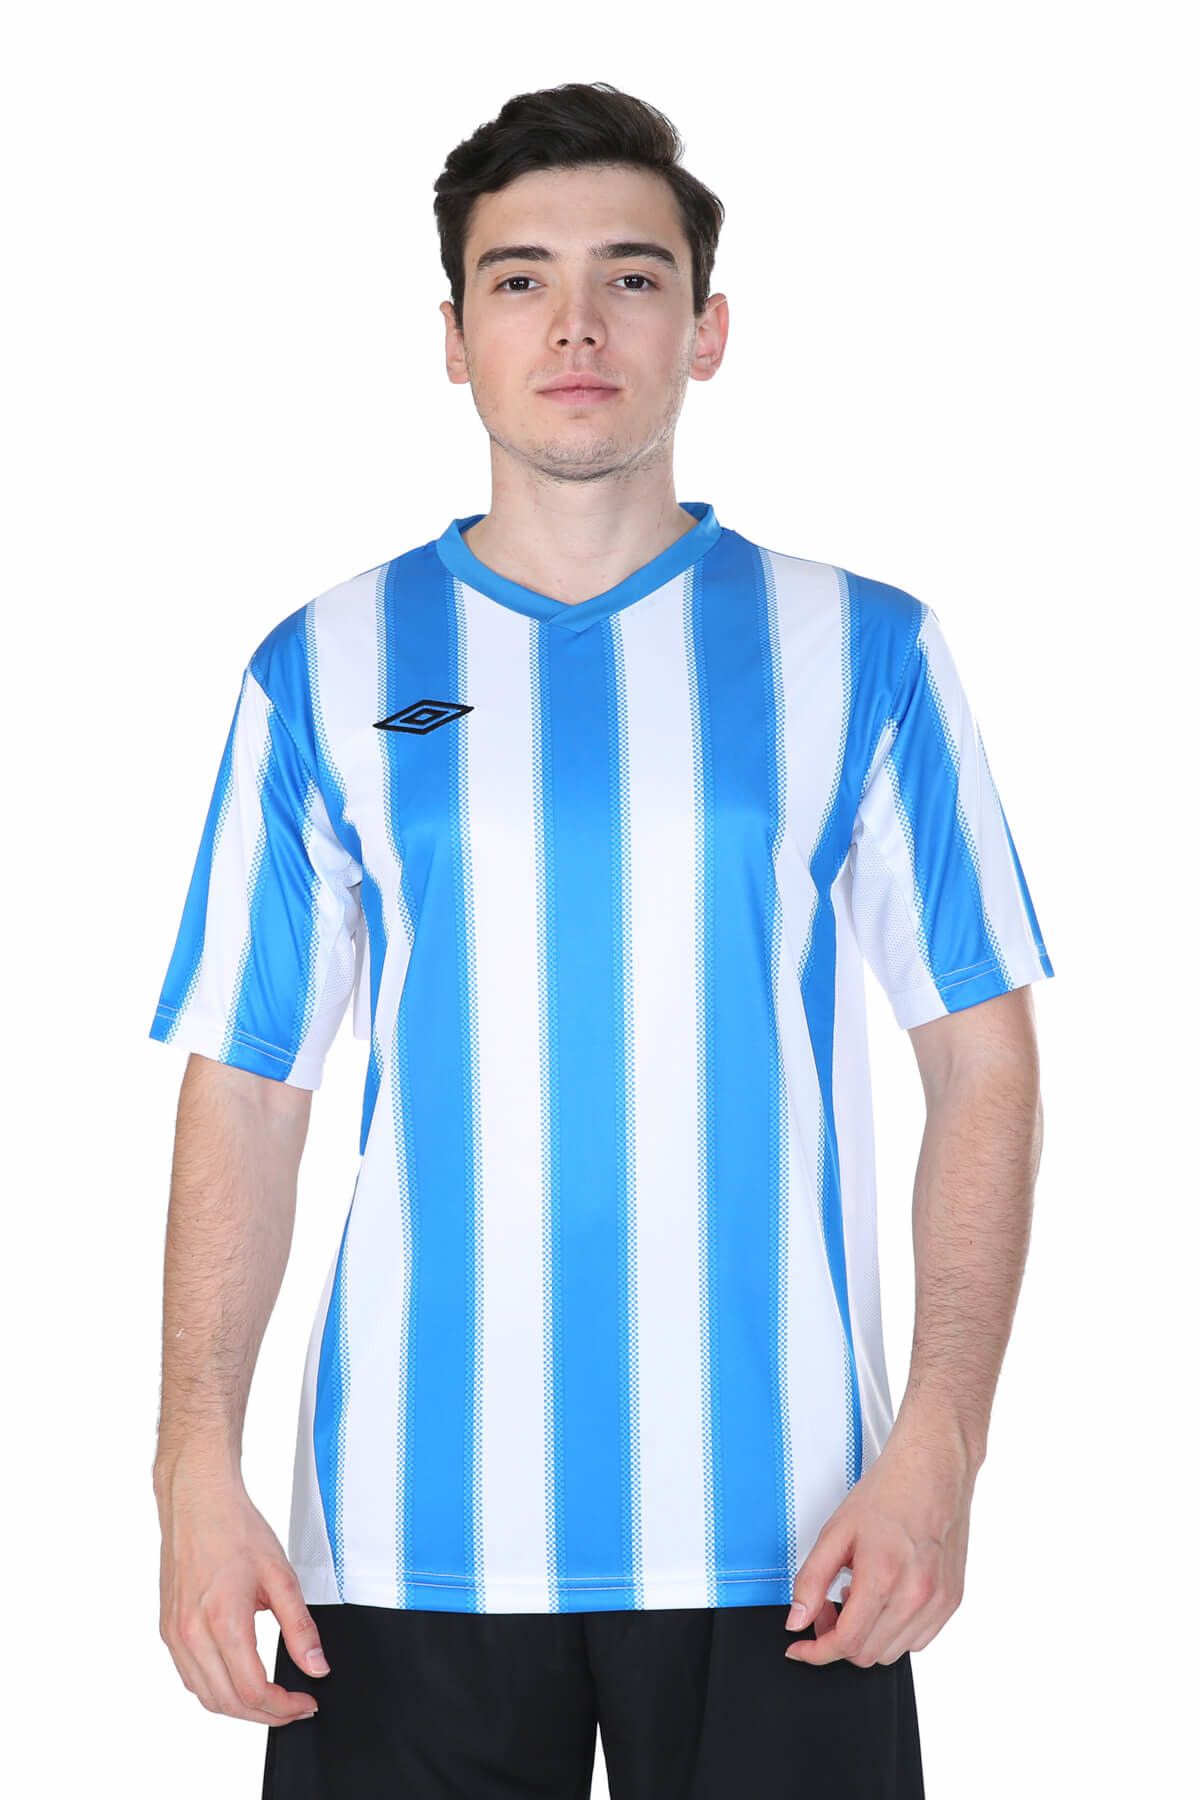 Umbro Erkek V Yaka Mavi-Beyaz Çizgili Futbol Forması - 2014105-0401